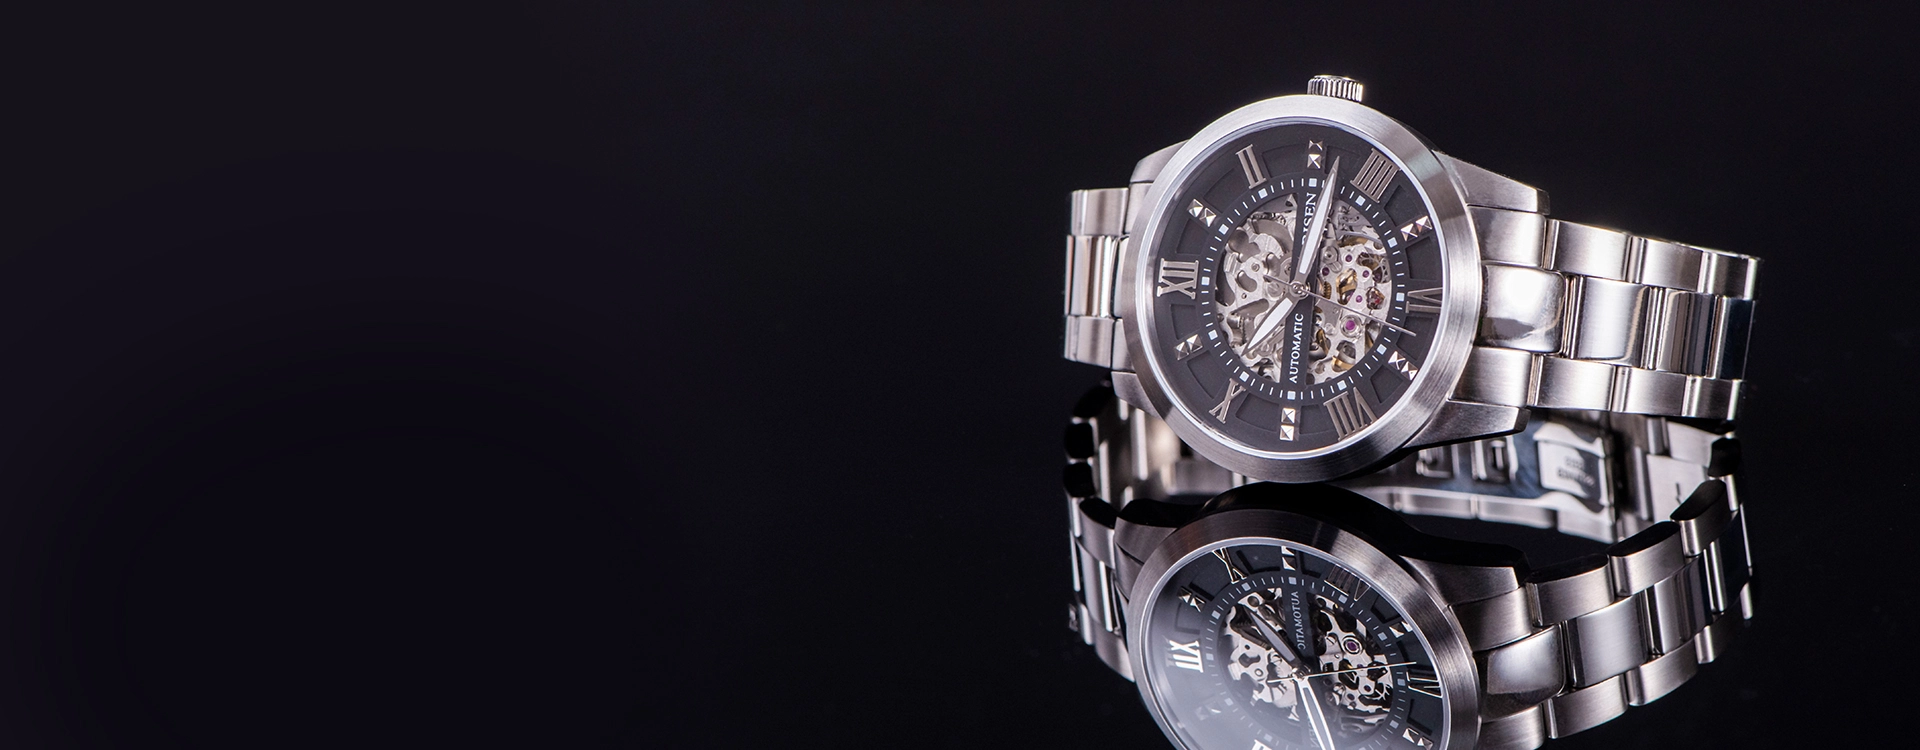 Carisen Luxury Watch